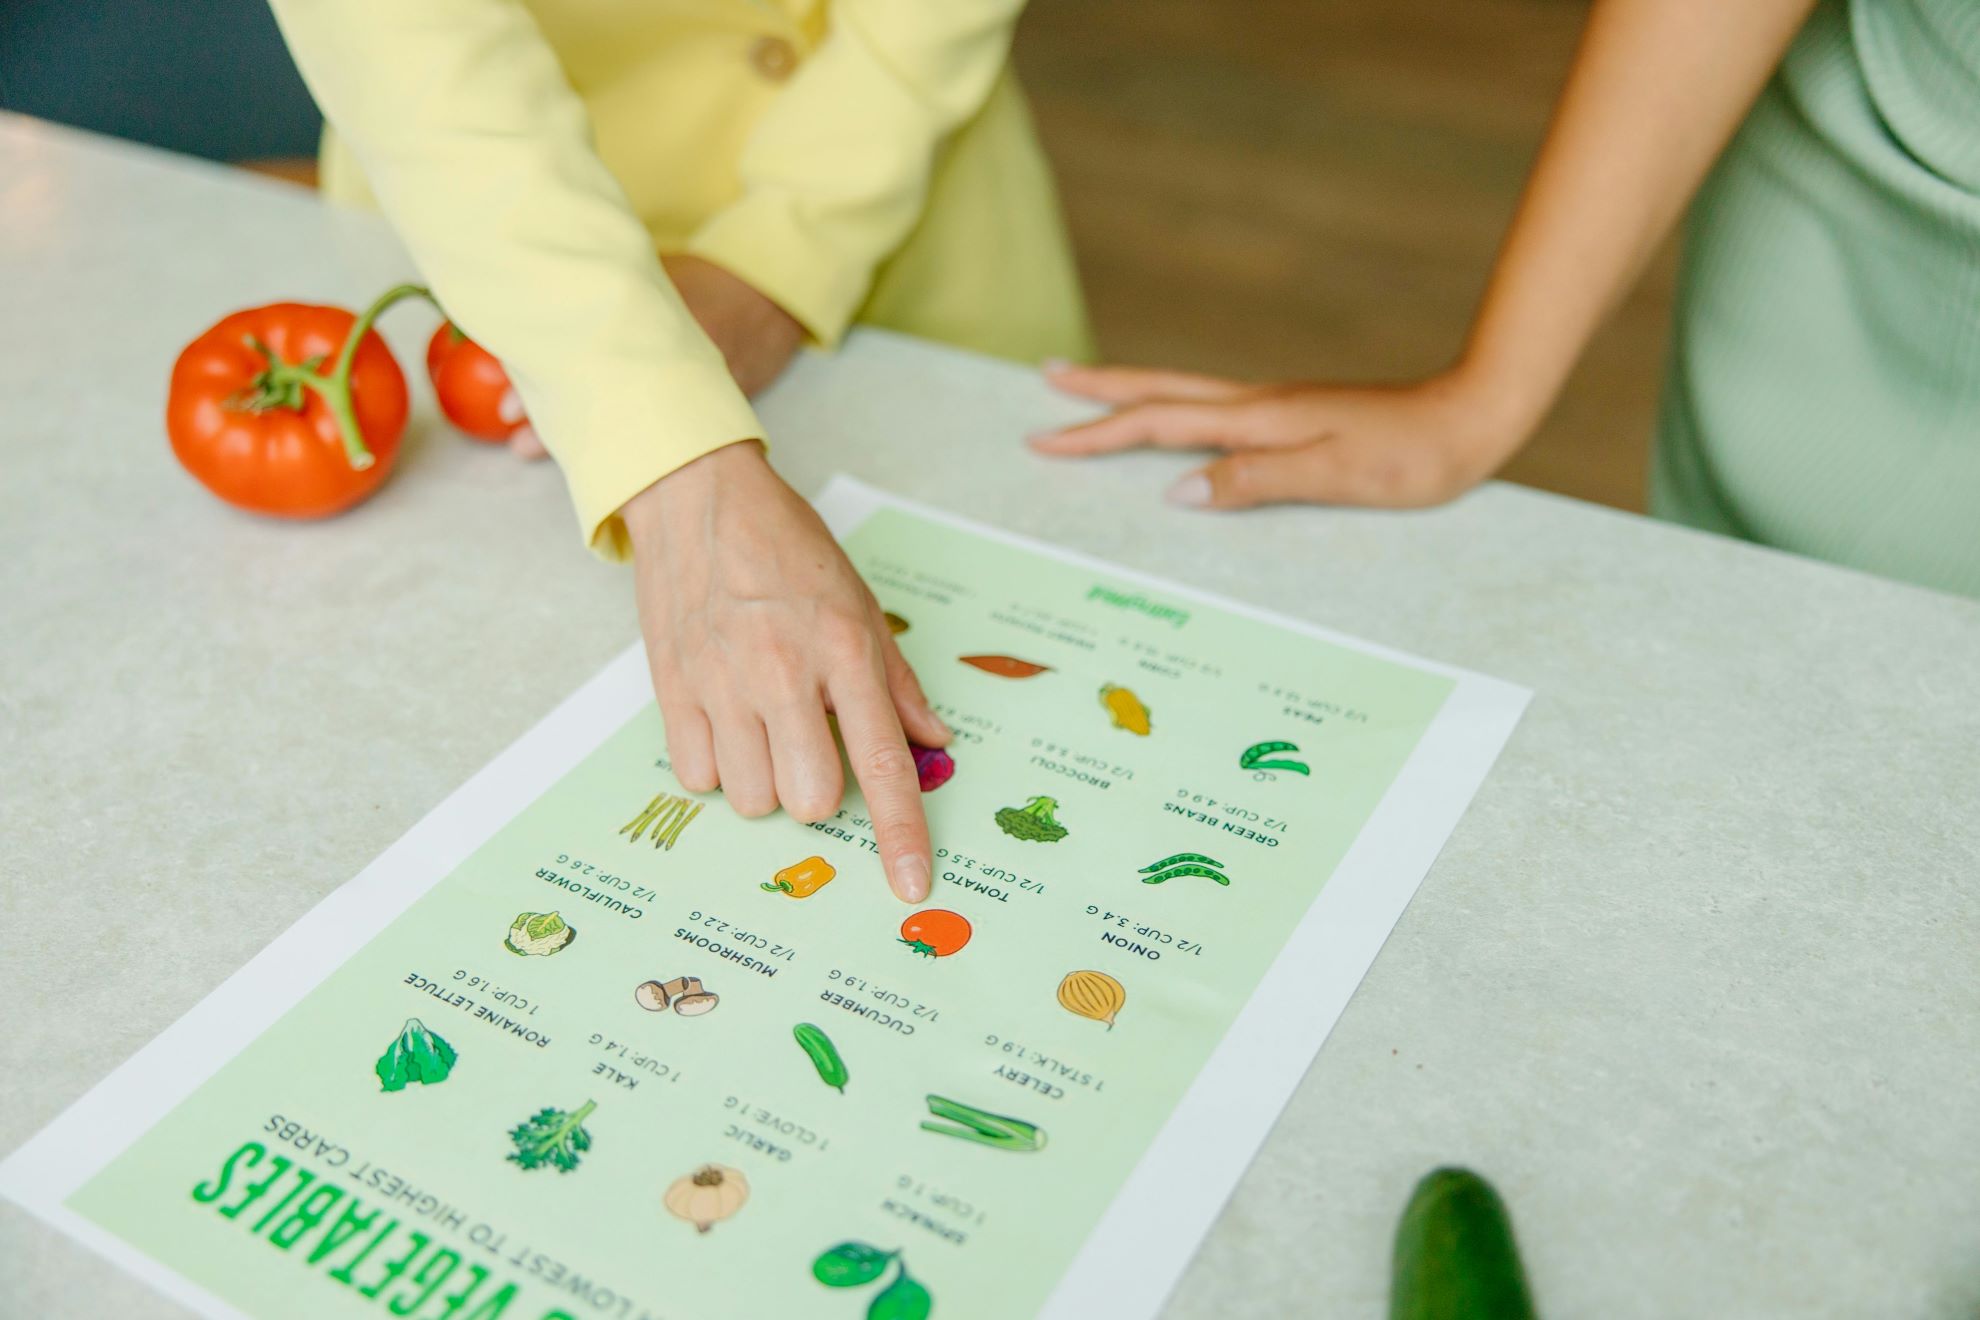 La dietista illustra ad una paziente le proprietà di alcuni alimenti su una tabella